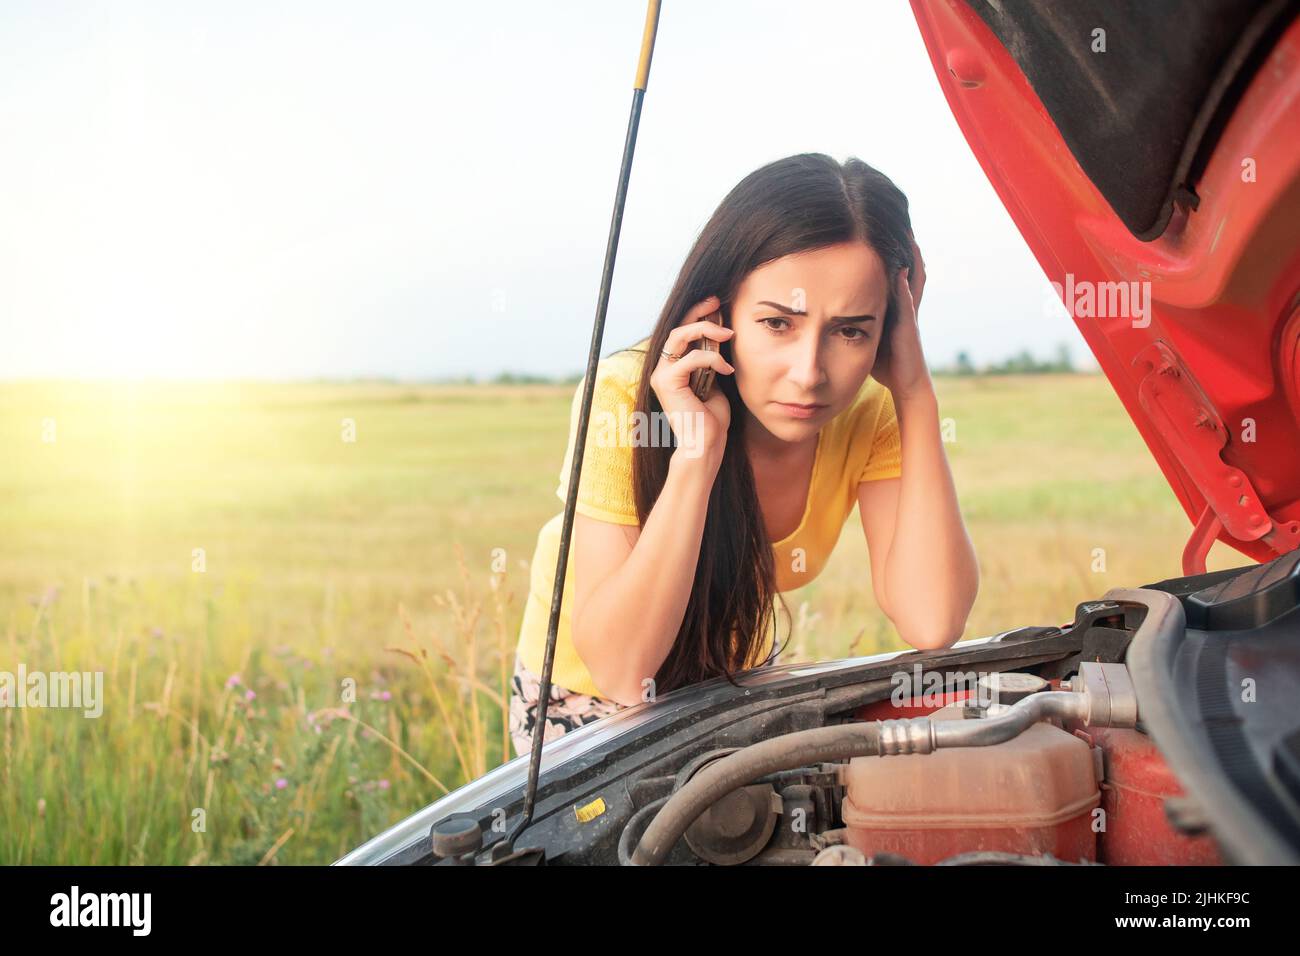 Eine junge Frau ruft am Telefon an, während sie neben einem kaputten Auto mit offener Haube steht. Stockfoto